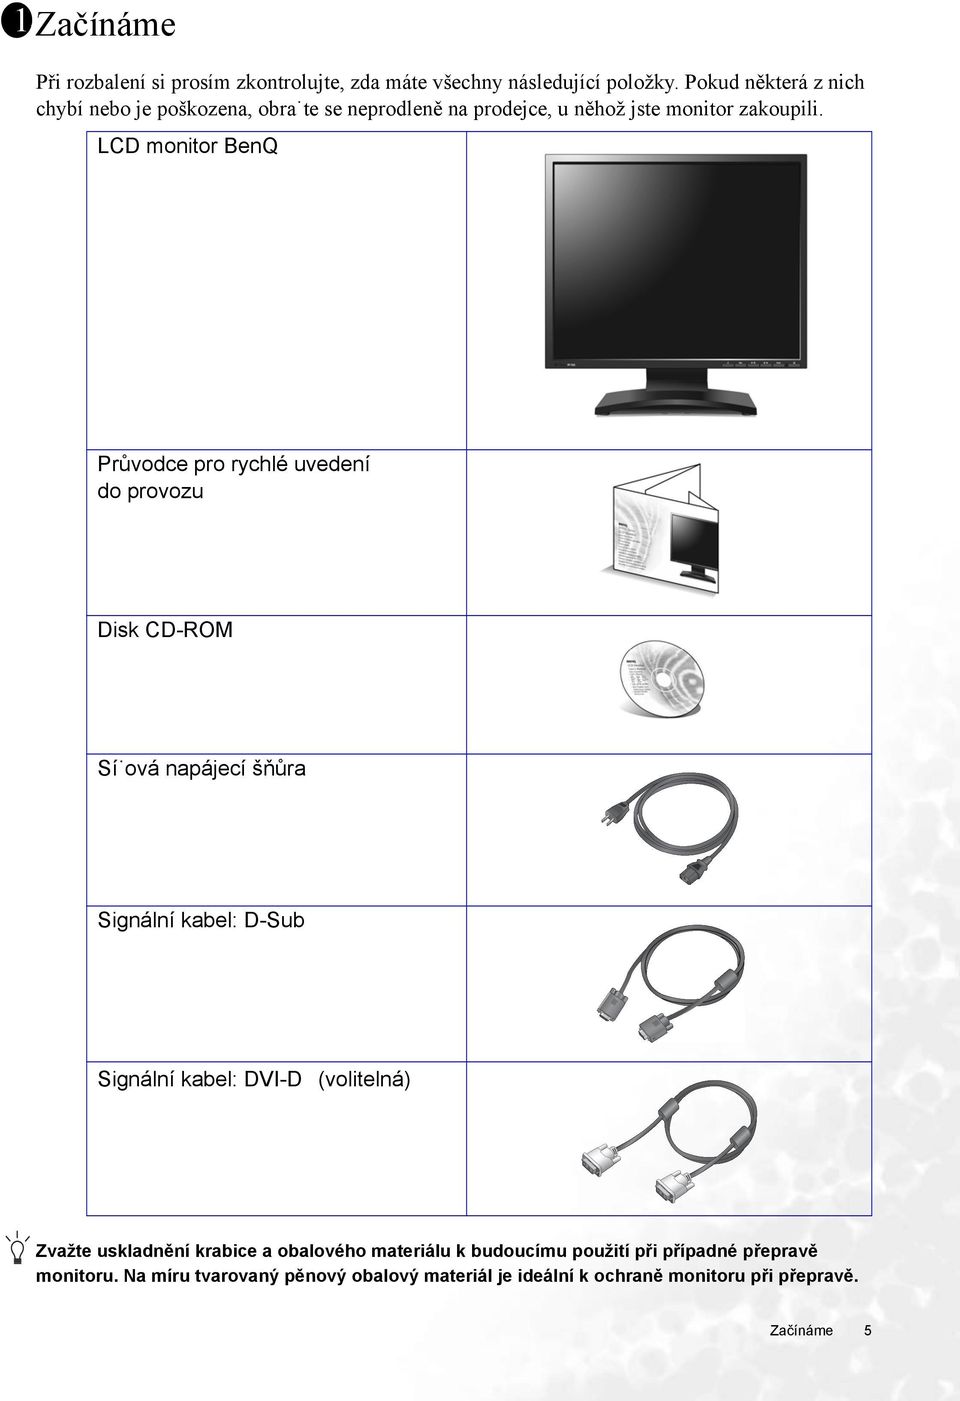 LCD monitor BenQ Průvodce pro rychlé uvedení do provozu Disk CD-ROM Sí ová napájecí šňůra Signální kabel: D-Sub Signální kabel: DVI-D